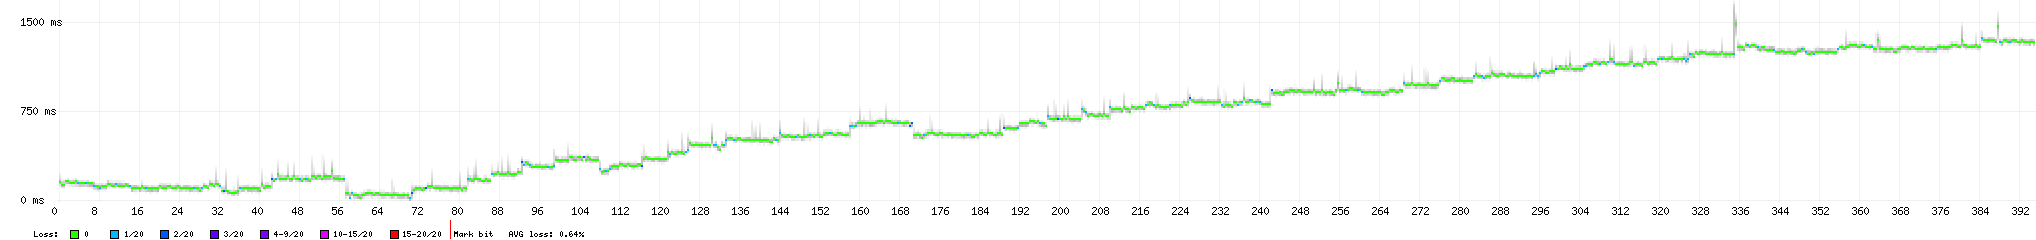 graf zpoždění paketů po překódování na alaw